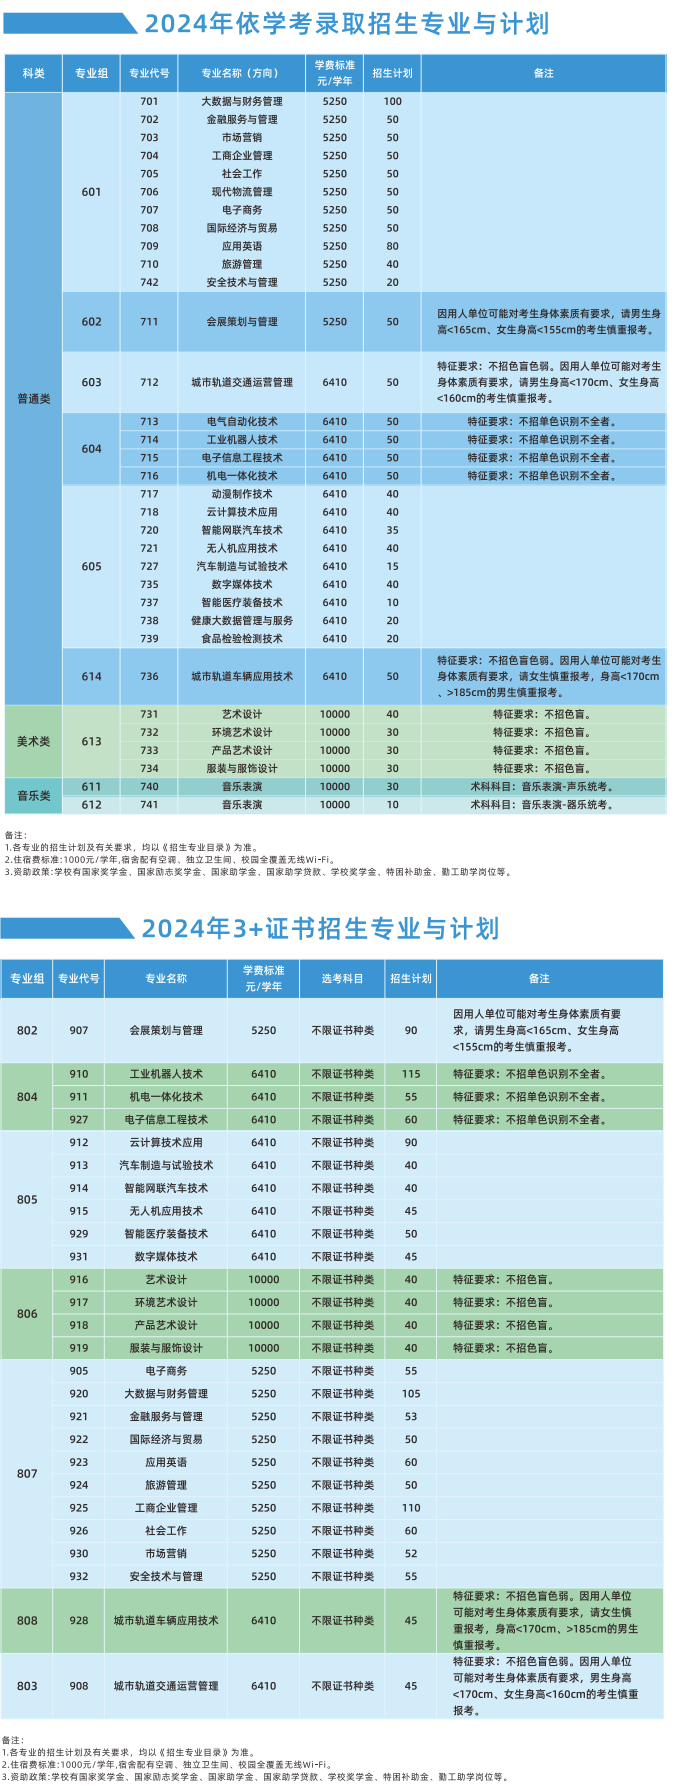 2024广州科技贸易职业学院春季高考招生计划